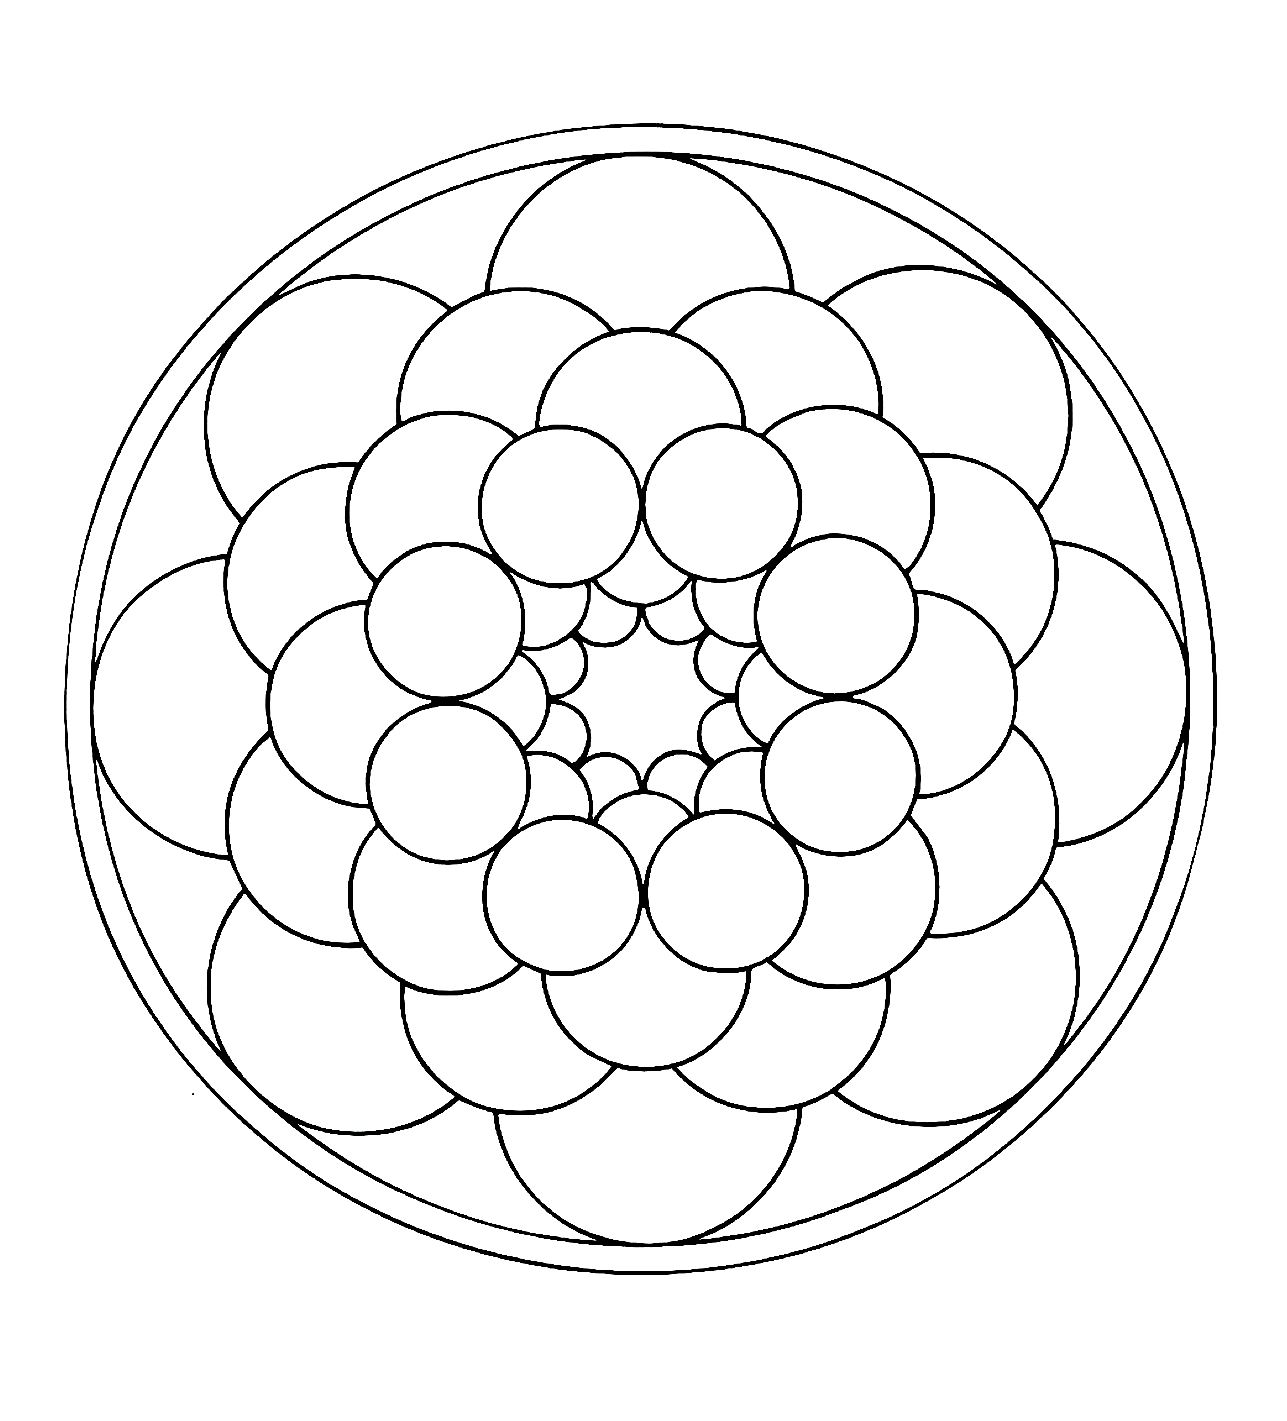 Mandala à télécharger de forme ronde. Très facile à colorier.